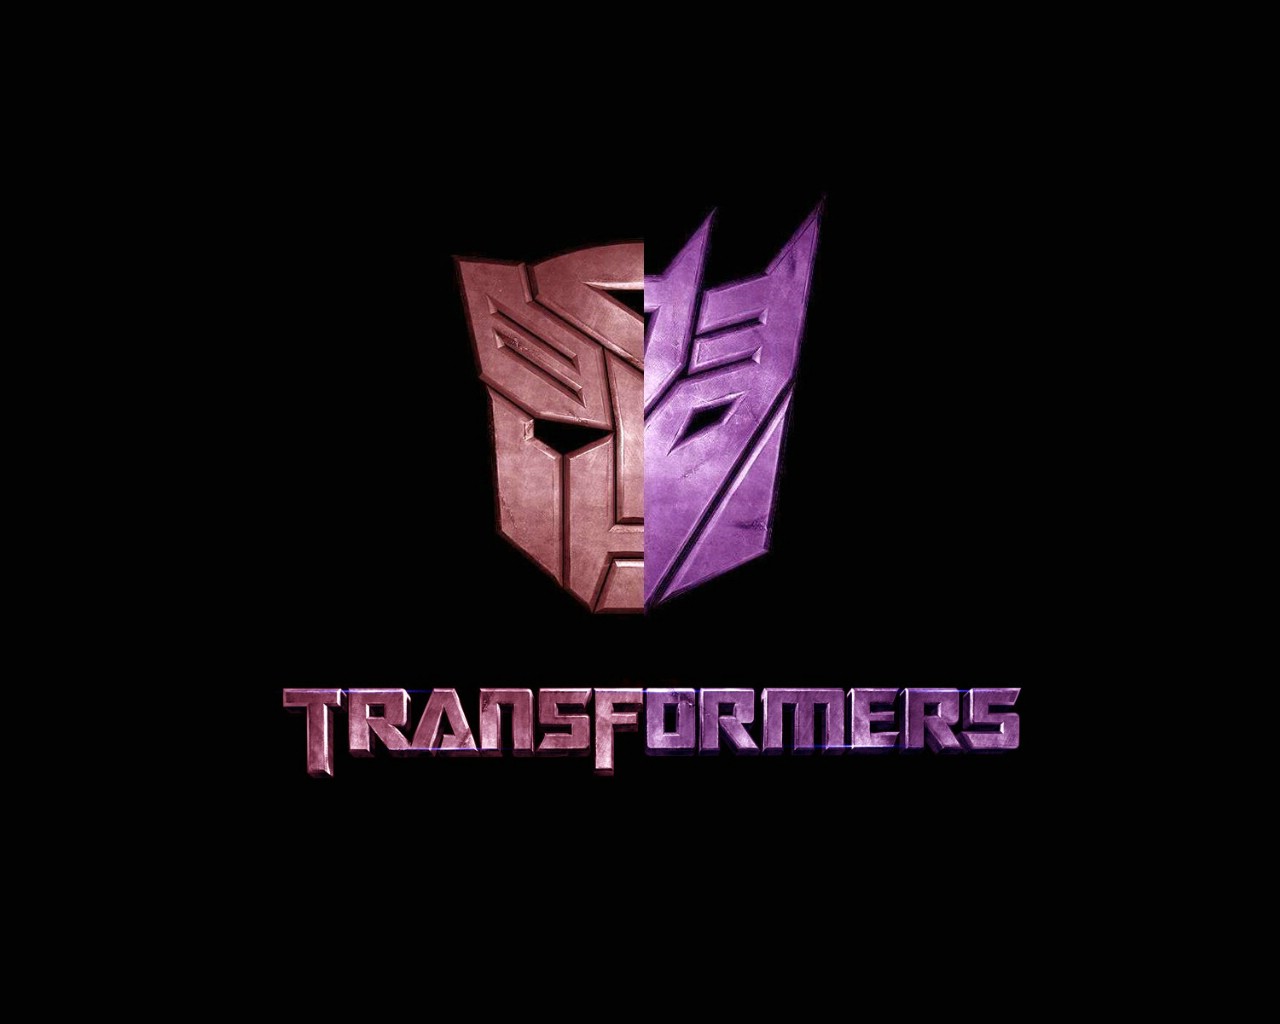 壁纸1280x1024Transformers 1 12壁纸 单个游戏 Transformers 第一辑壁纸 单个游戏 Transformers 第一辑图片 单个游戏 Transformers 第一辑素材 游戏壁纸 游戏图库 游戏图片素材桌面壁纸